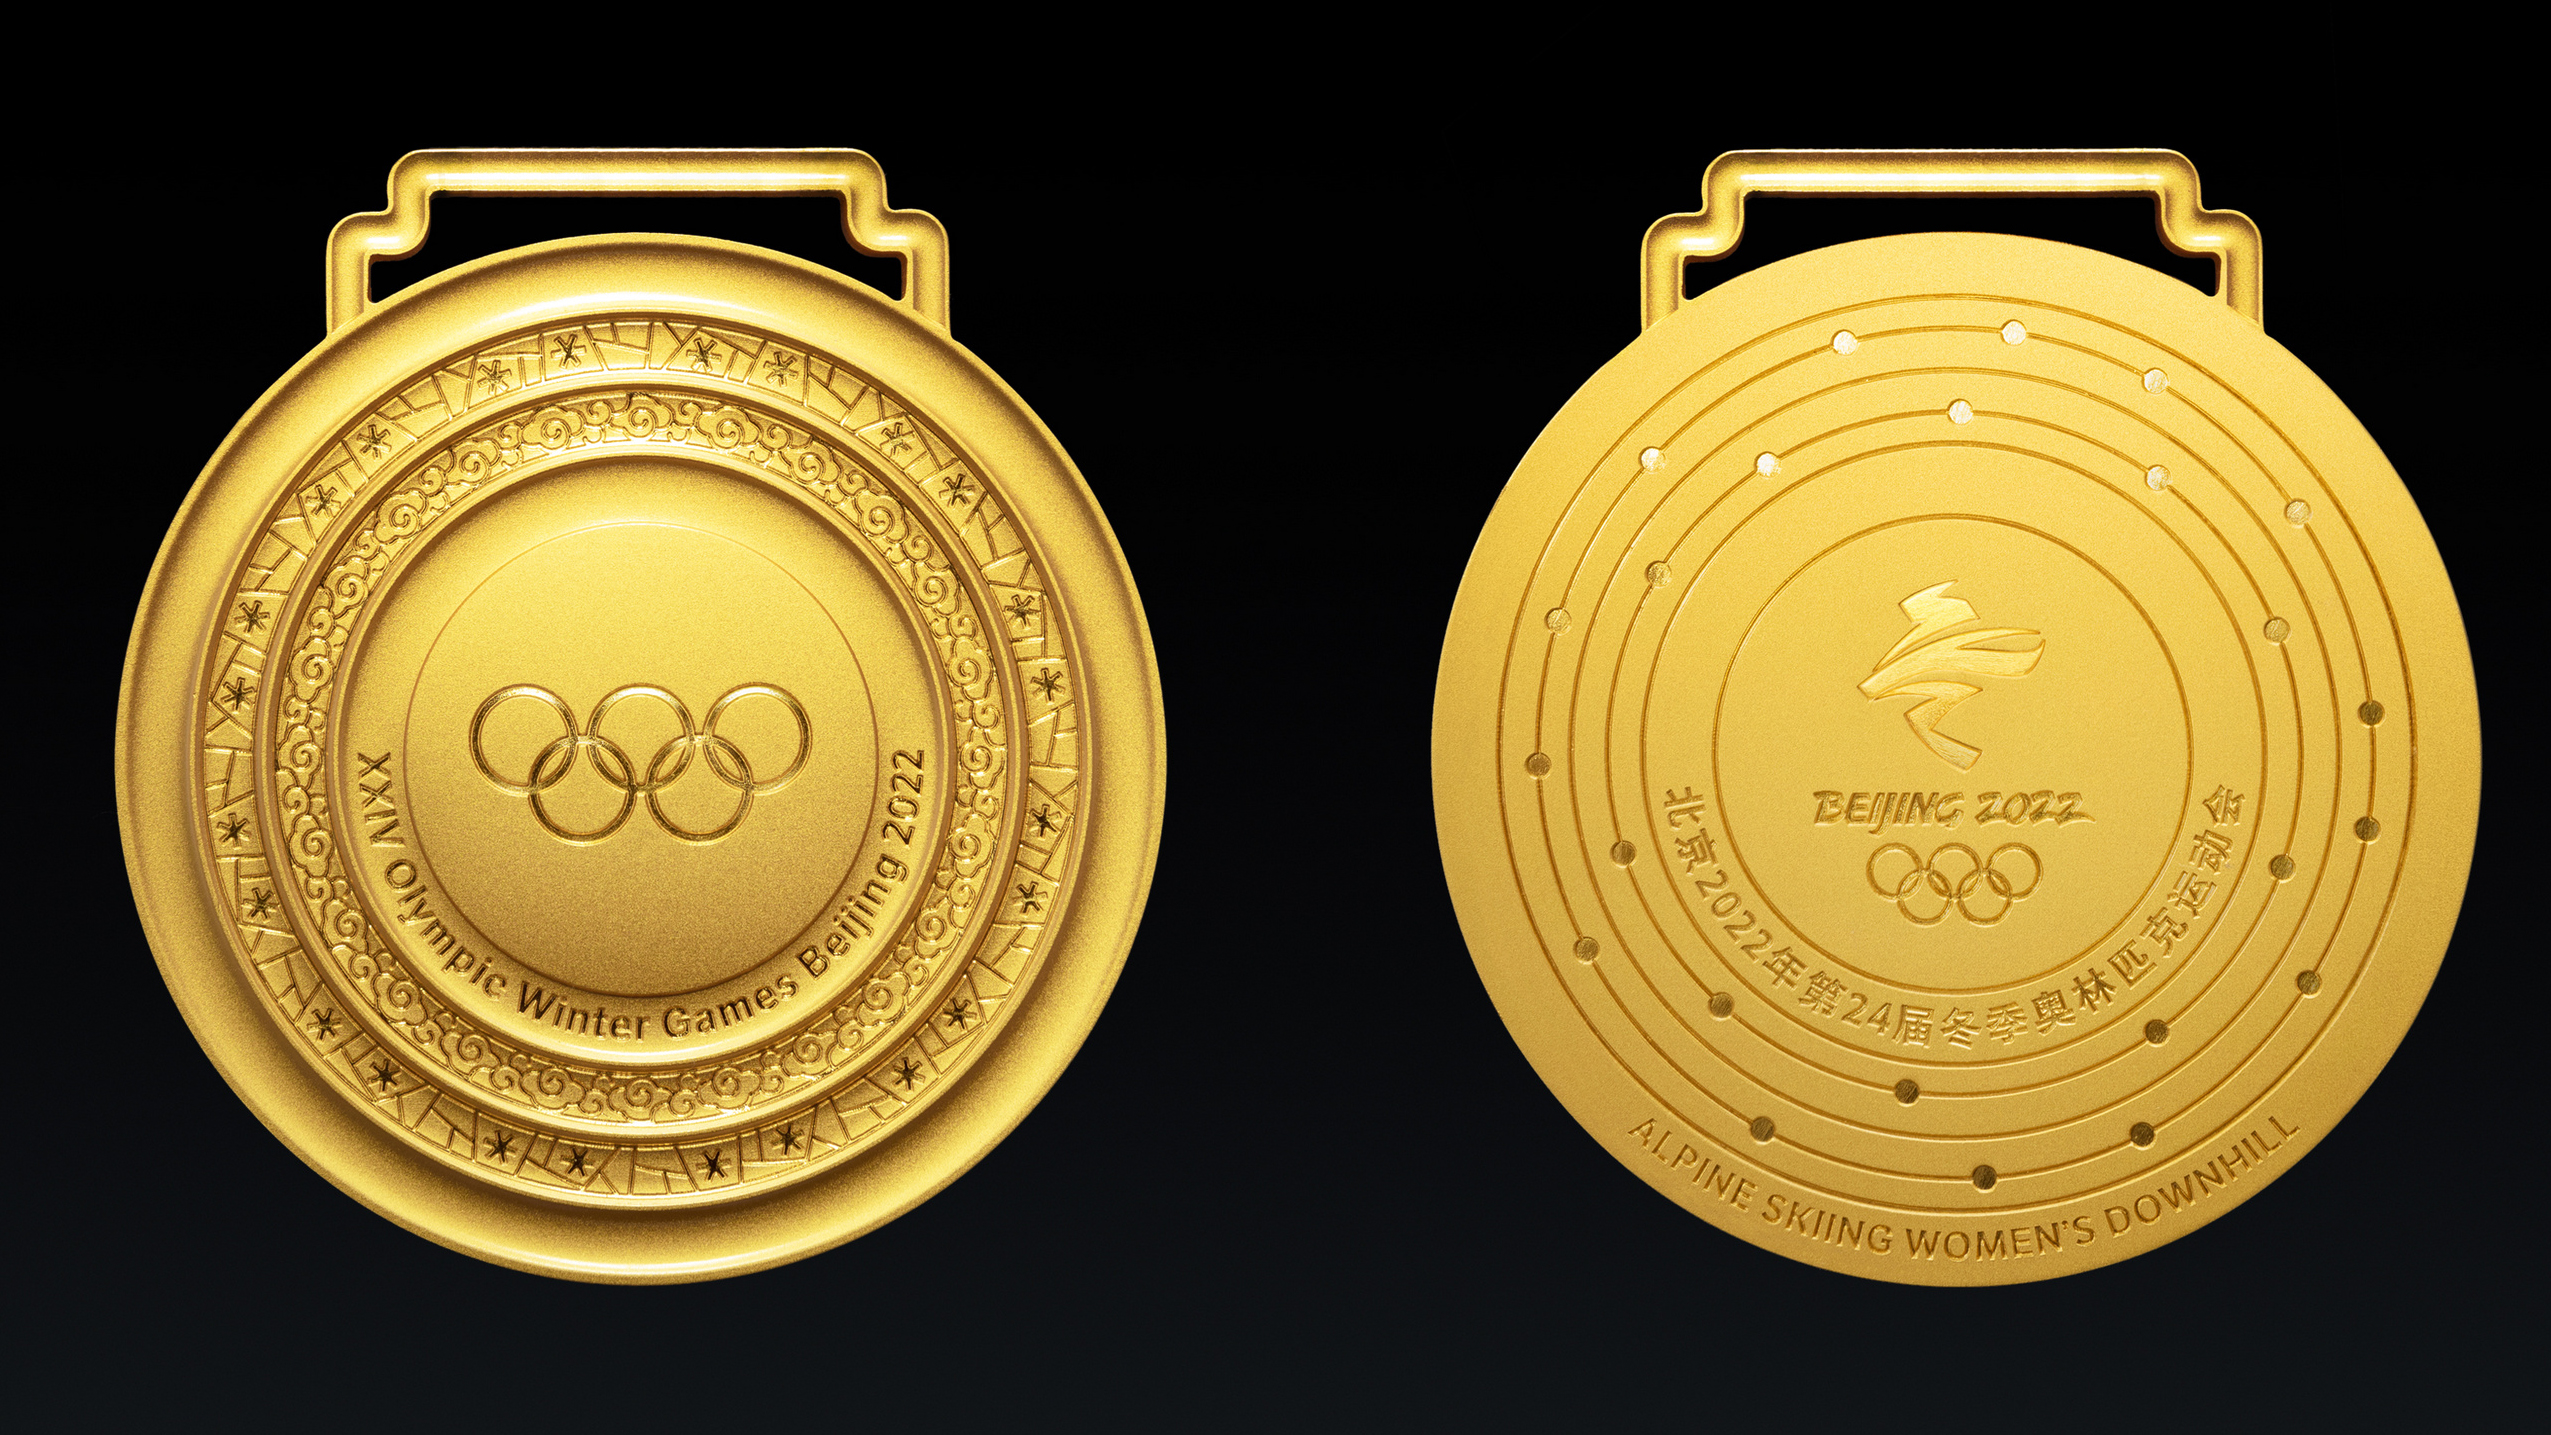 北京冬奥会奖牌同心形象来源于中国古代同心圆玉璧,就与北京2008年